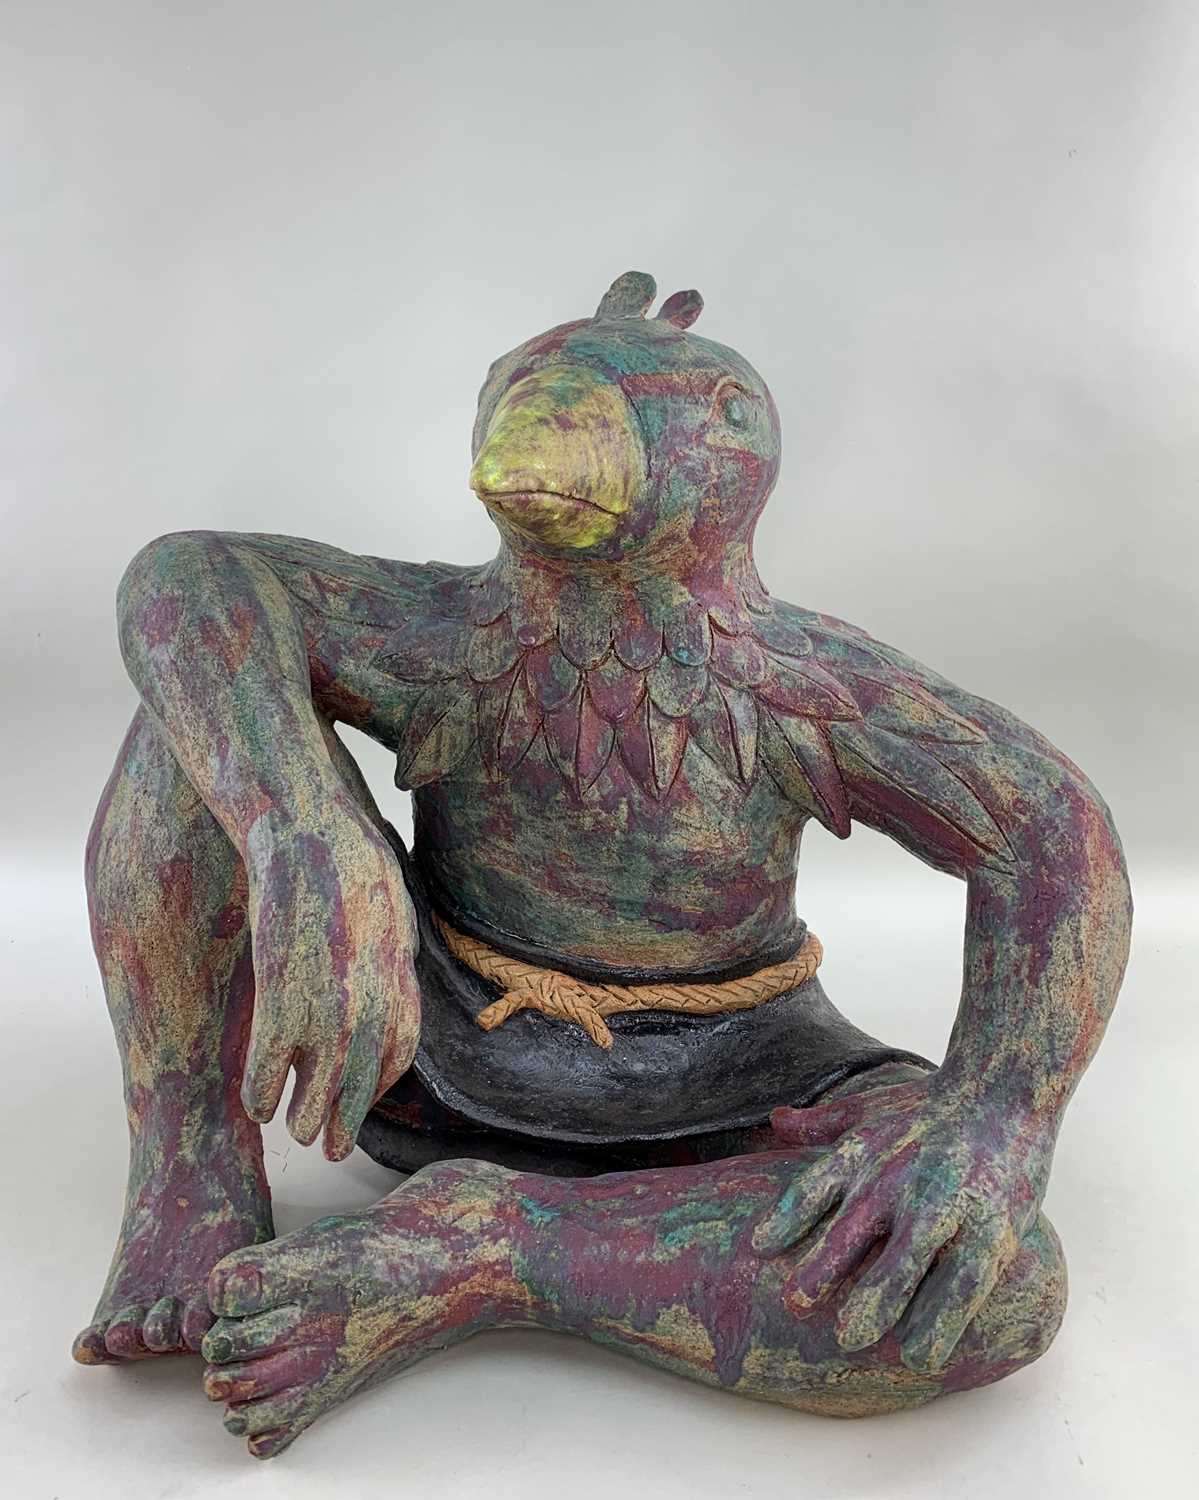 PAMELA MEI-YEE LEUNG (Hong Kong, 1962-2011) glazed stoneware sculpture - 'Bird Man', unsigned, 46cms - Image 2 of 2